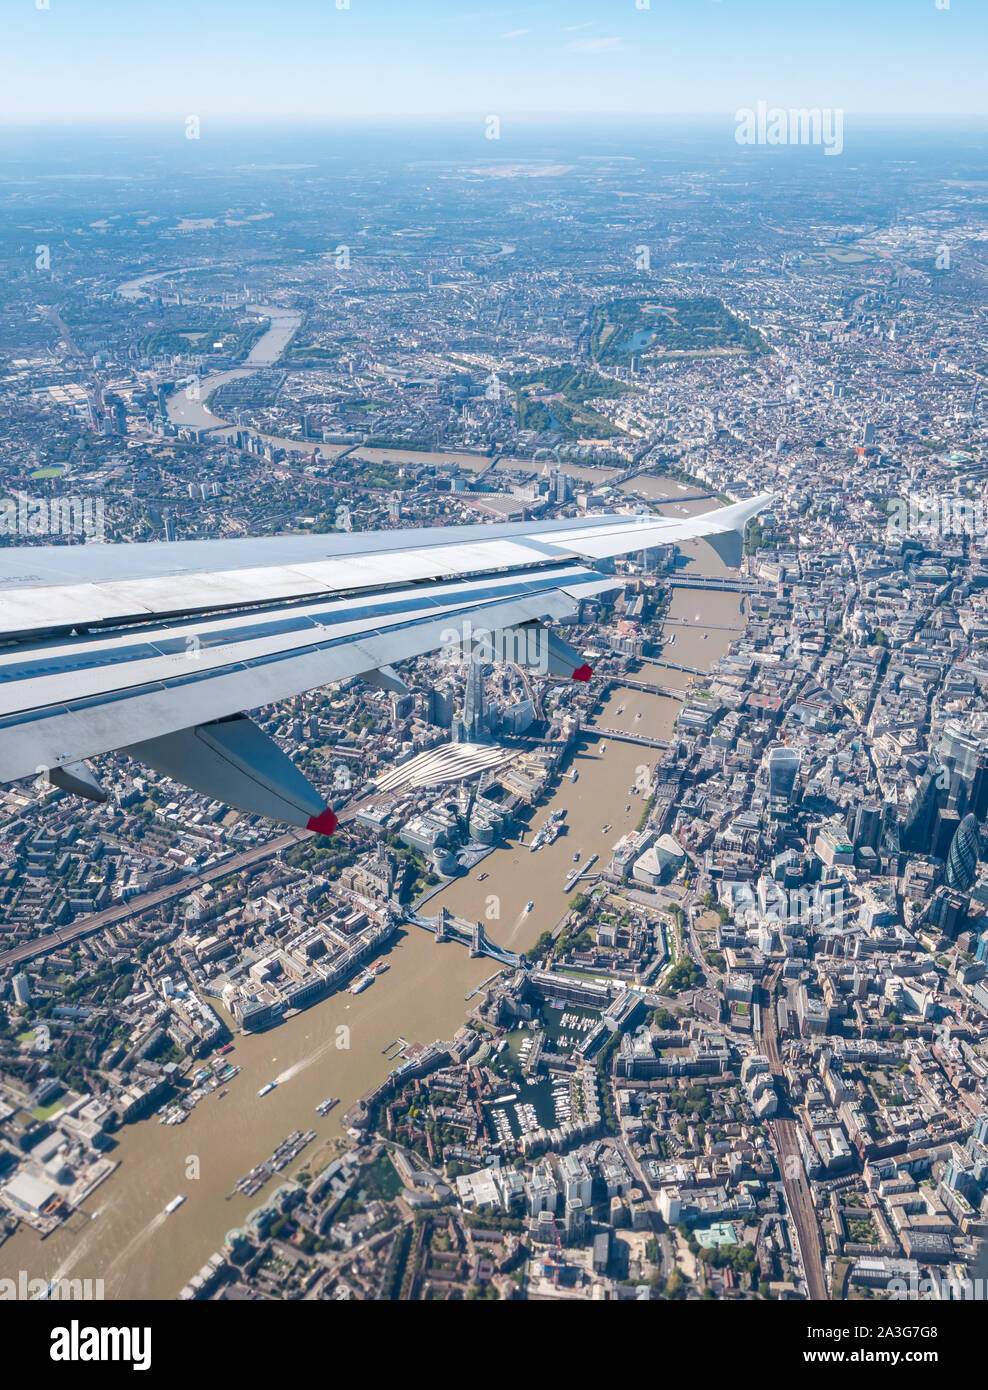 Vue depuis la fenêtre en avion sur la Tamise et le centre-ville, avec Shard, Tower Bridge et Hyde Park, Londres, Angleterre, Royaume-Uni Banque D'Images